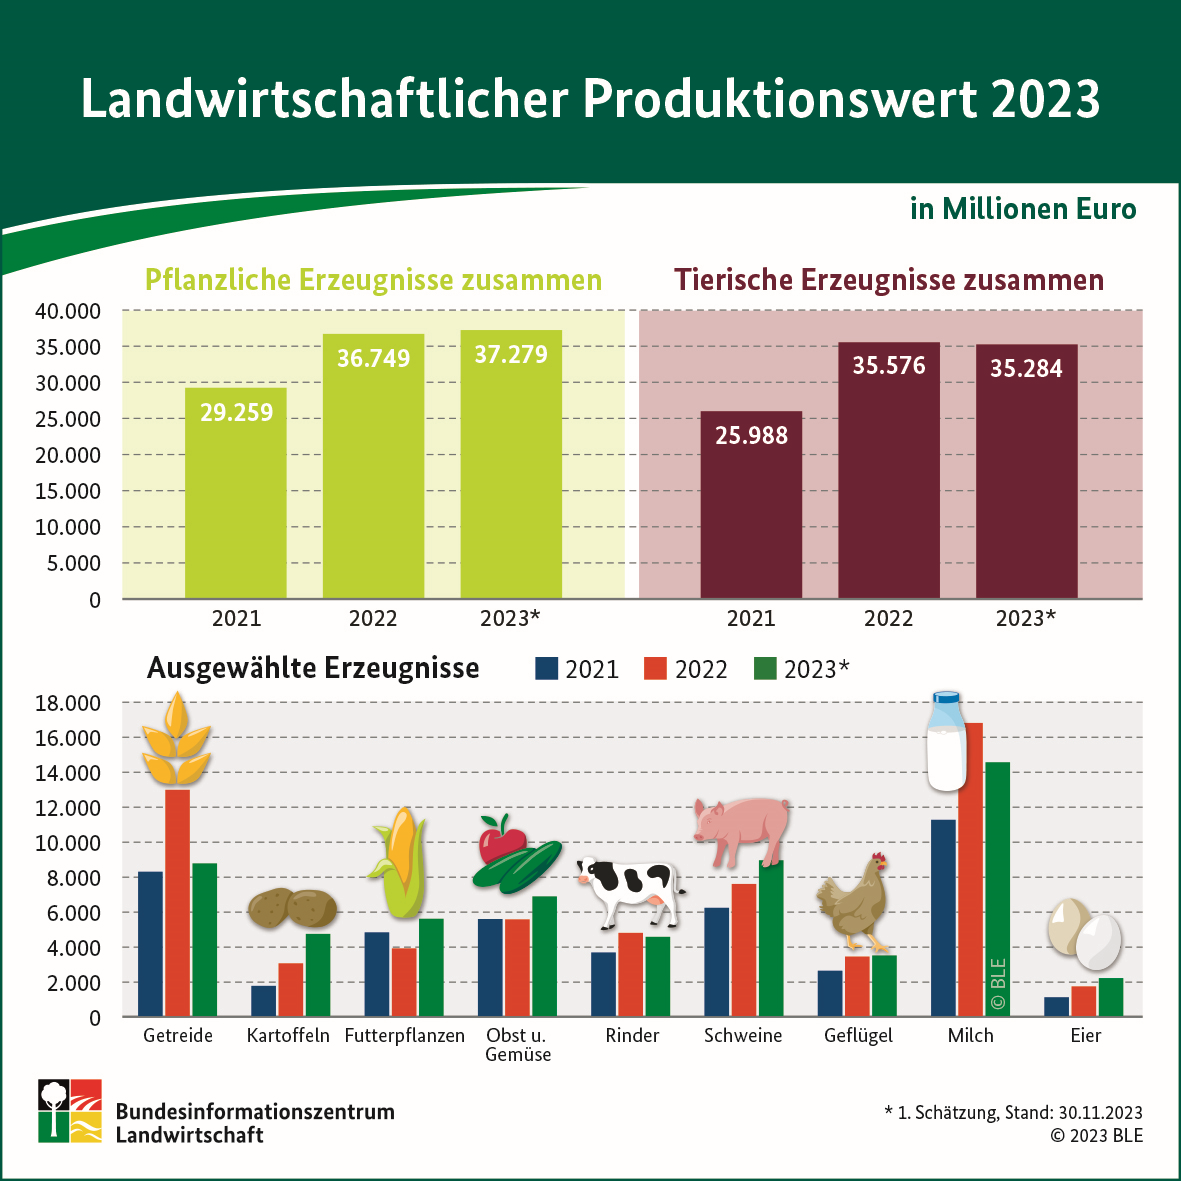 Drei Säulendiagramme des landwirtschaftlichen Produktionswertes für die Jahre 2019 bis 2021. Aufgezeigt werden die Produktionswerte für pflanzliche- und tierische Erzeugnisse. Die Daten stammen aus der Tabelle Produktionswert der Landwirtschaft.